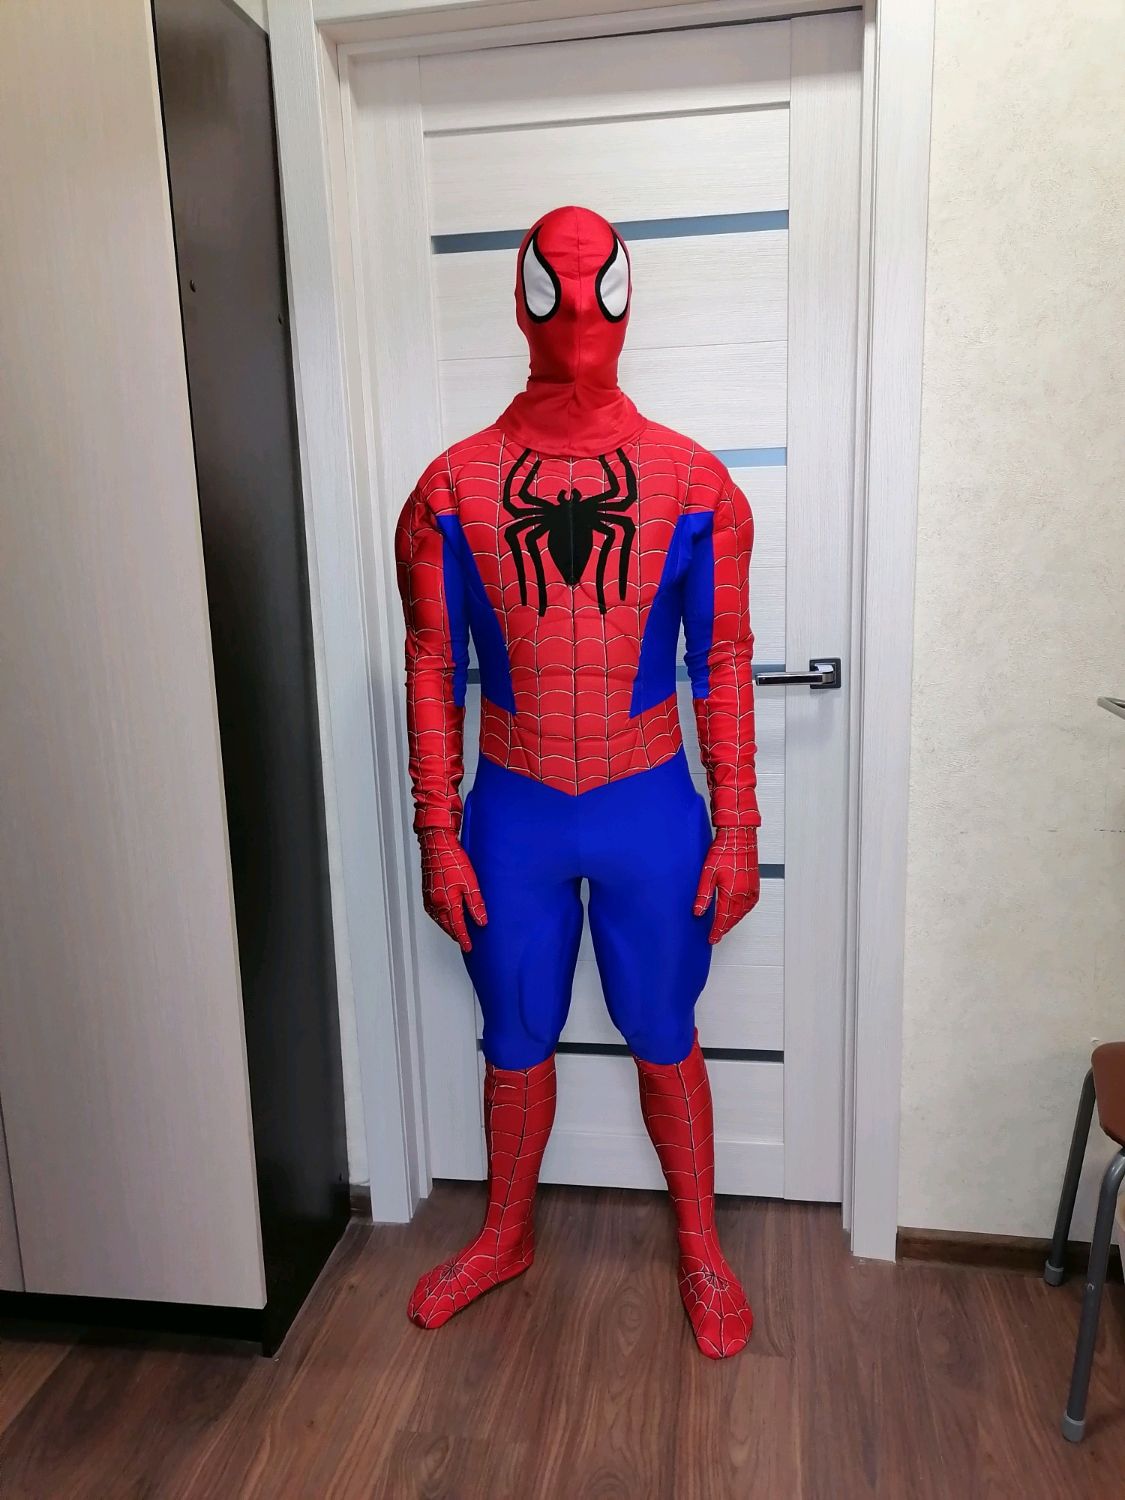 Карнавальный костюм Человек-паук 9016 к-21